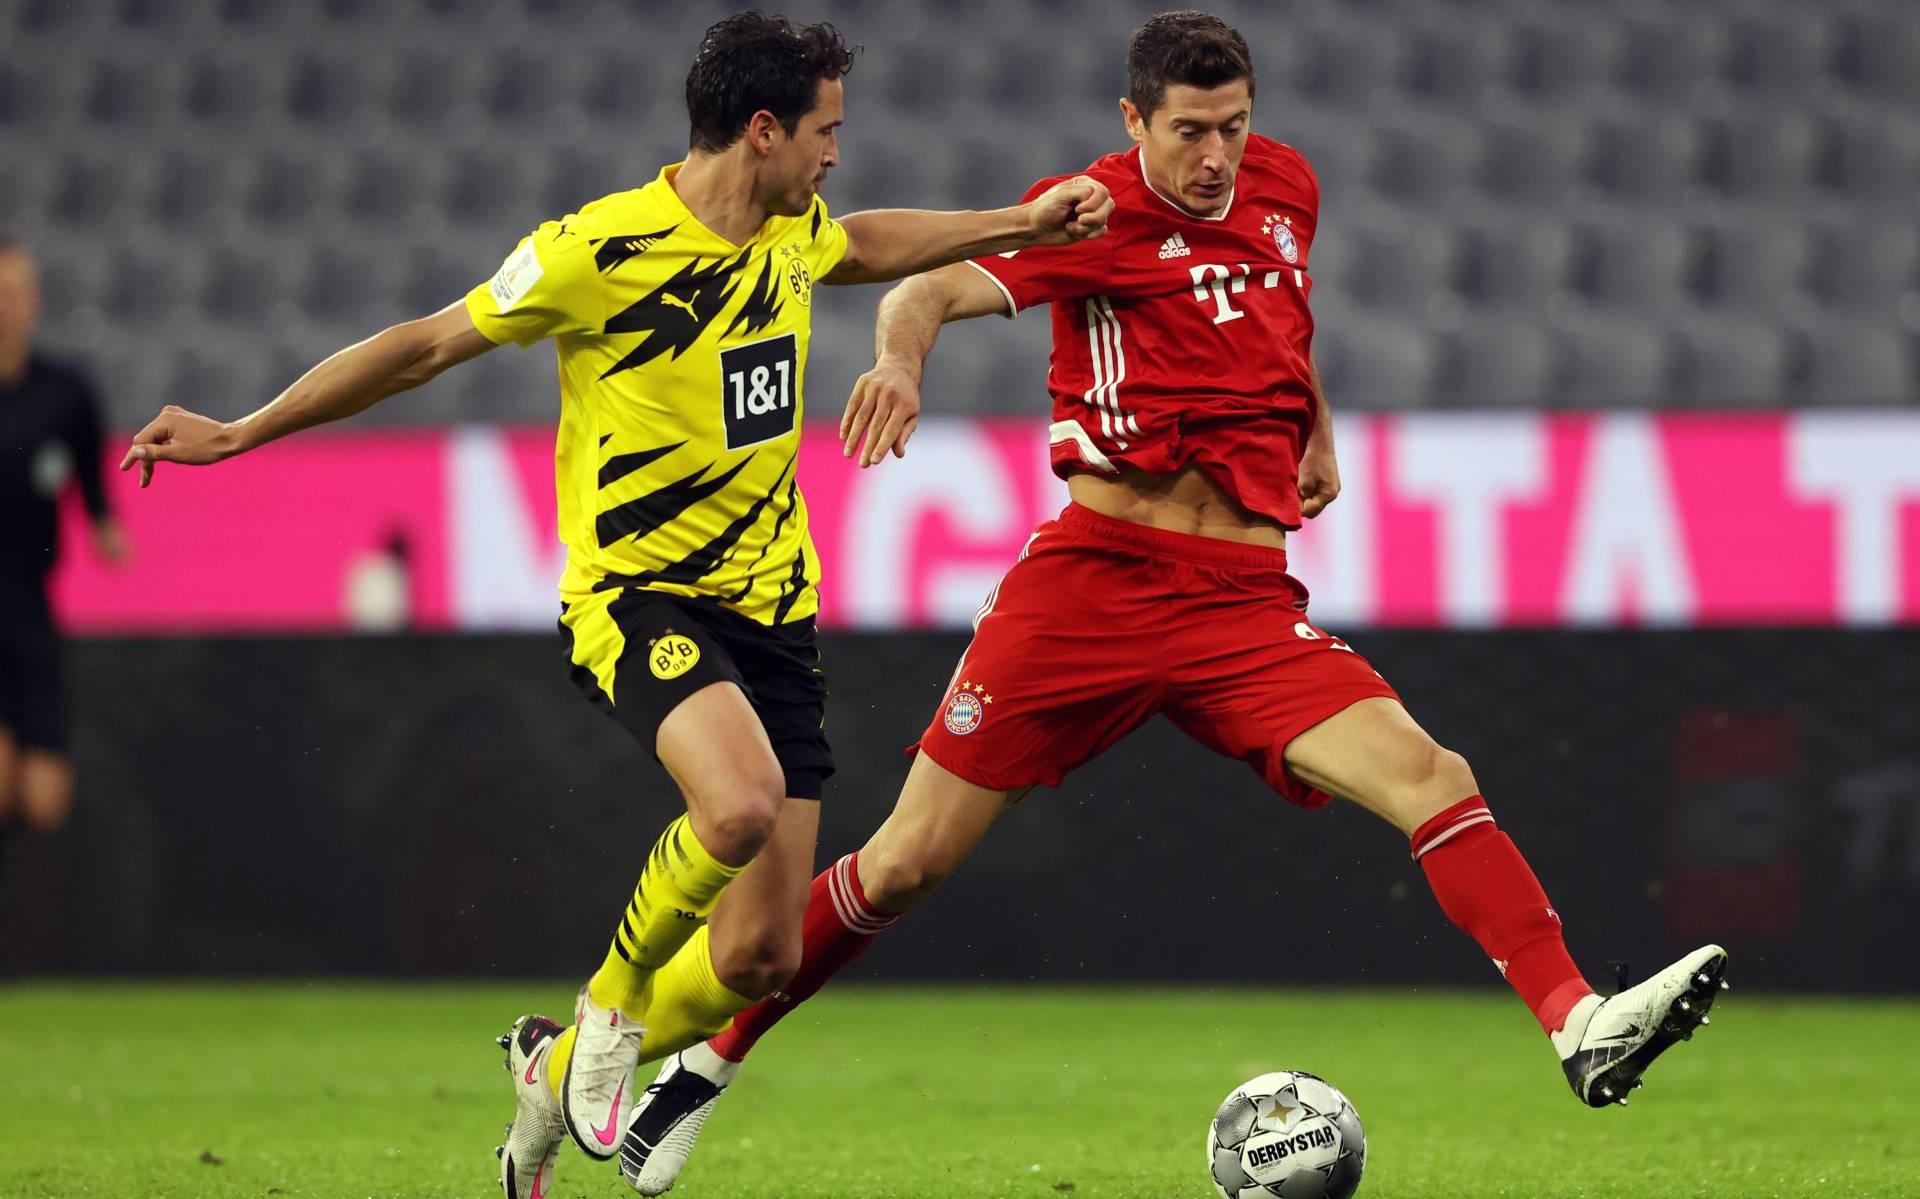 Bayern maakt prijzenpakket compleet met zege op Dortmund